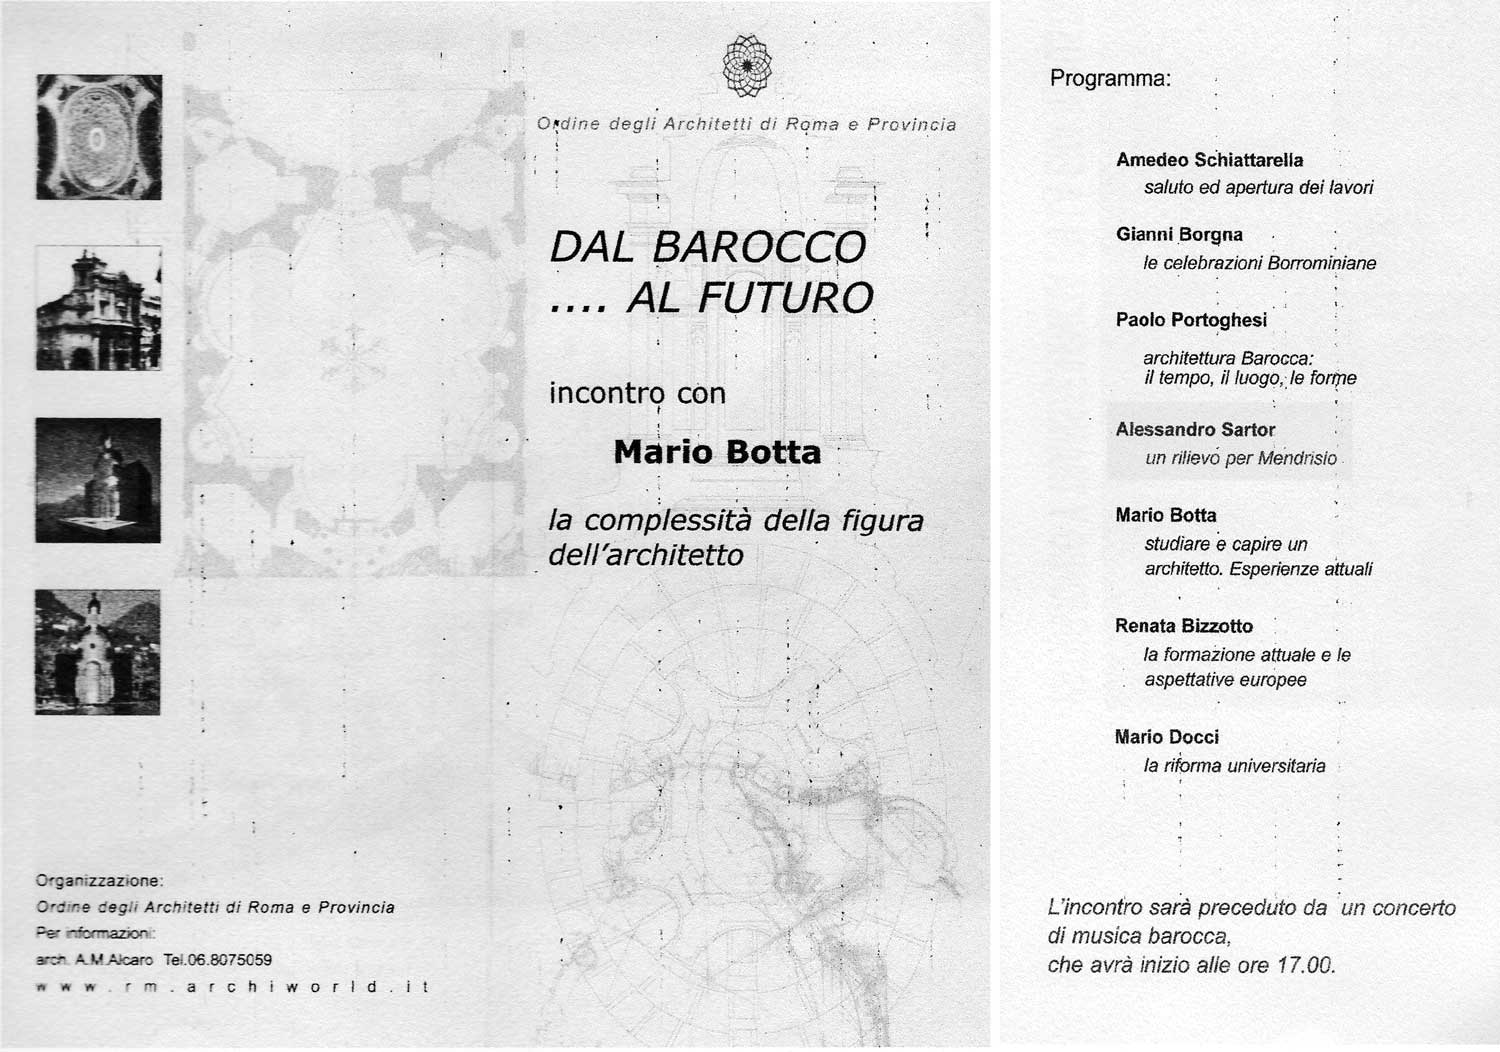 22 - Convegno Dal Barocco … al Futuro, Ordine degli Architetti PPC di Roma e Provincia, Roma - Programma